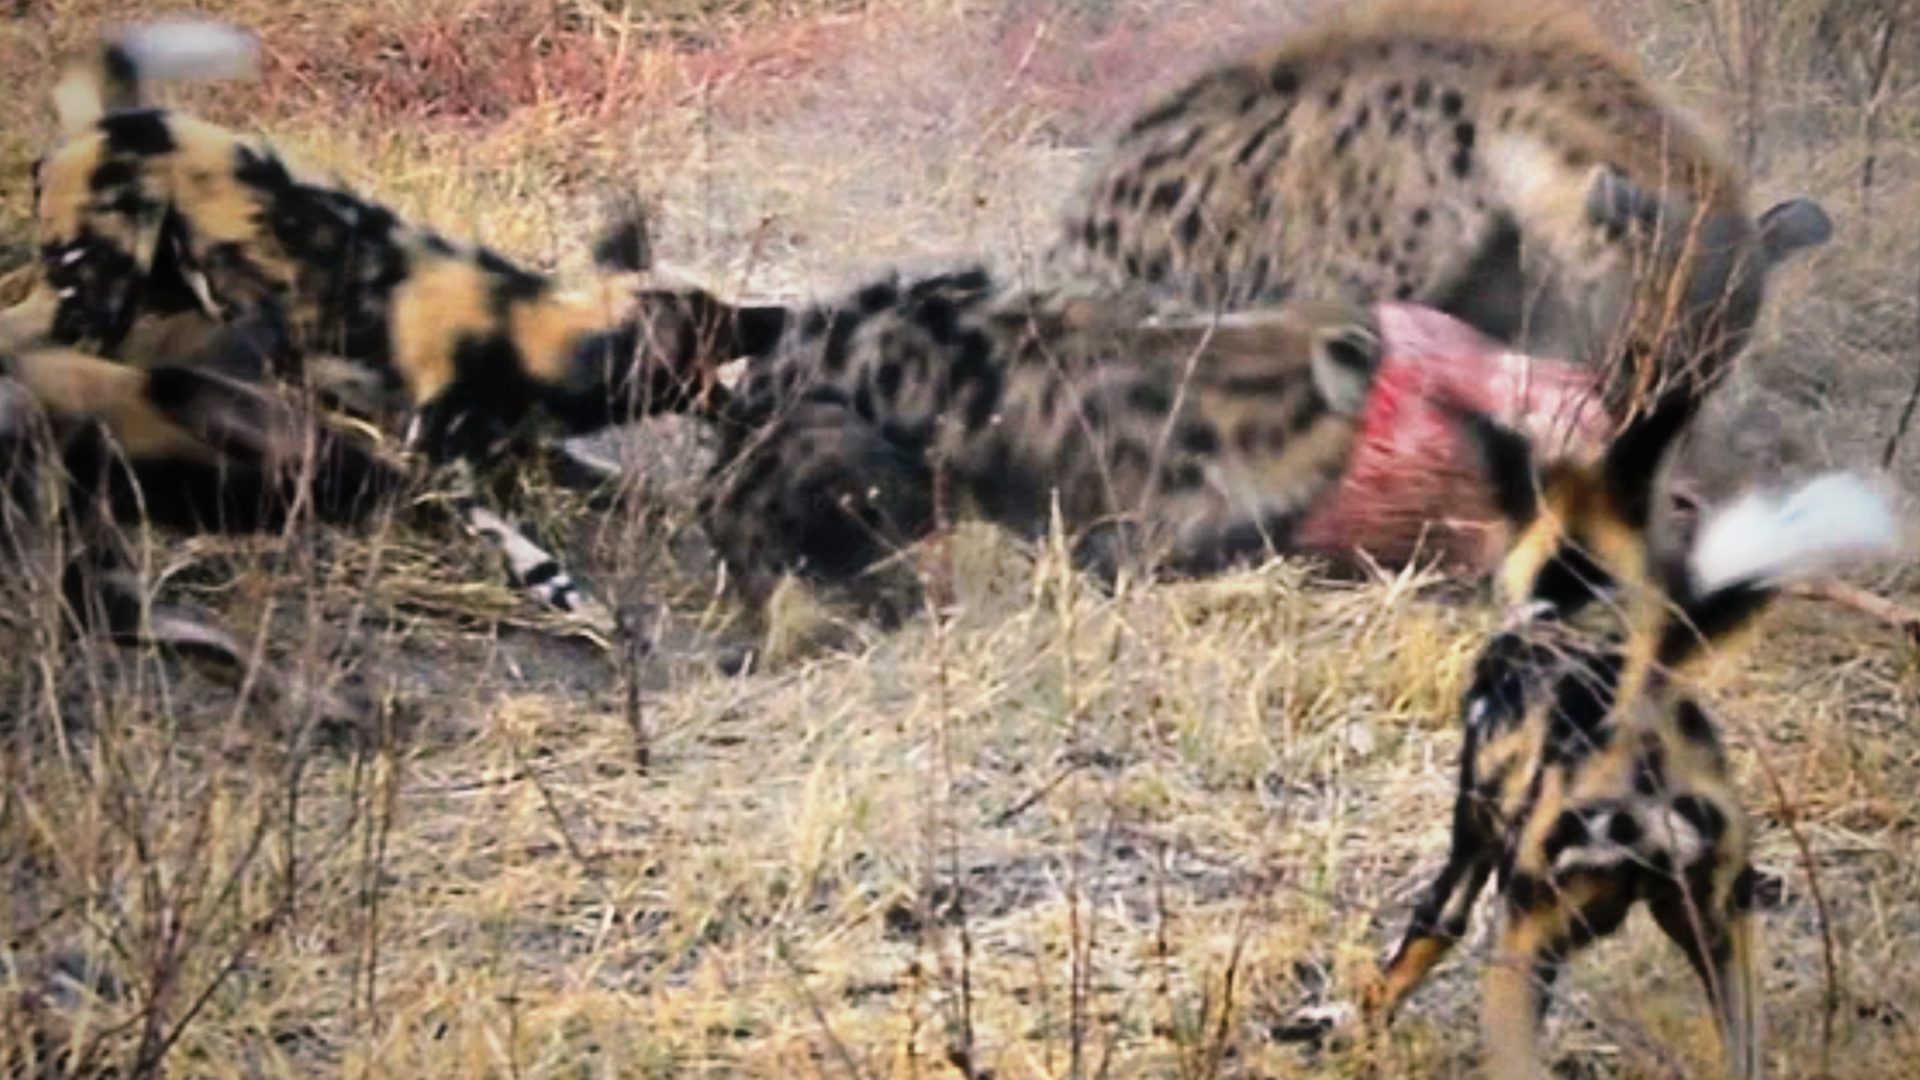 can a hyena kill a dog